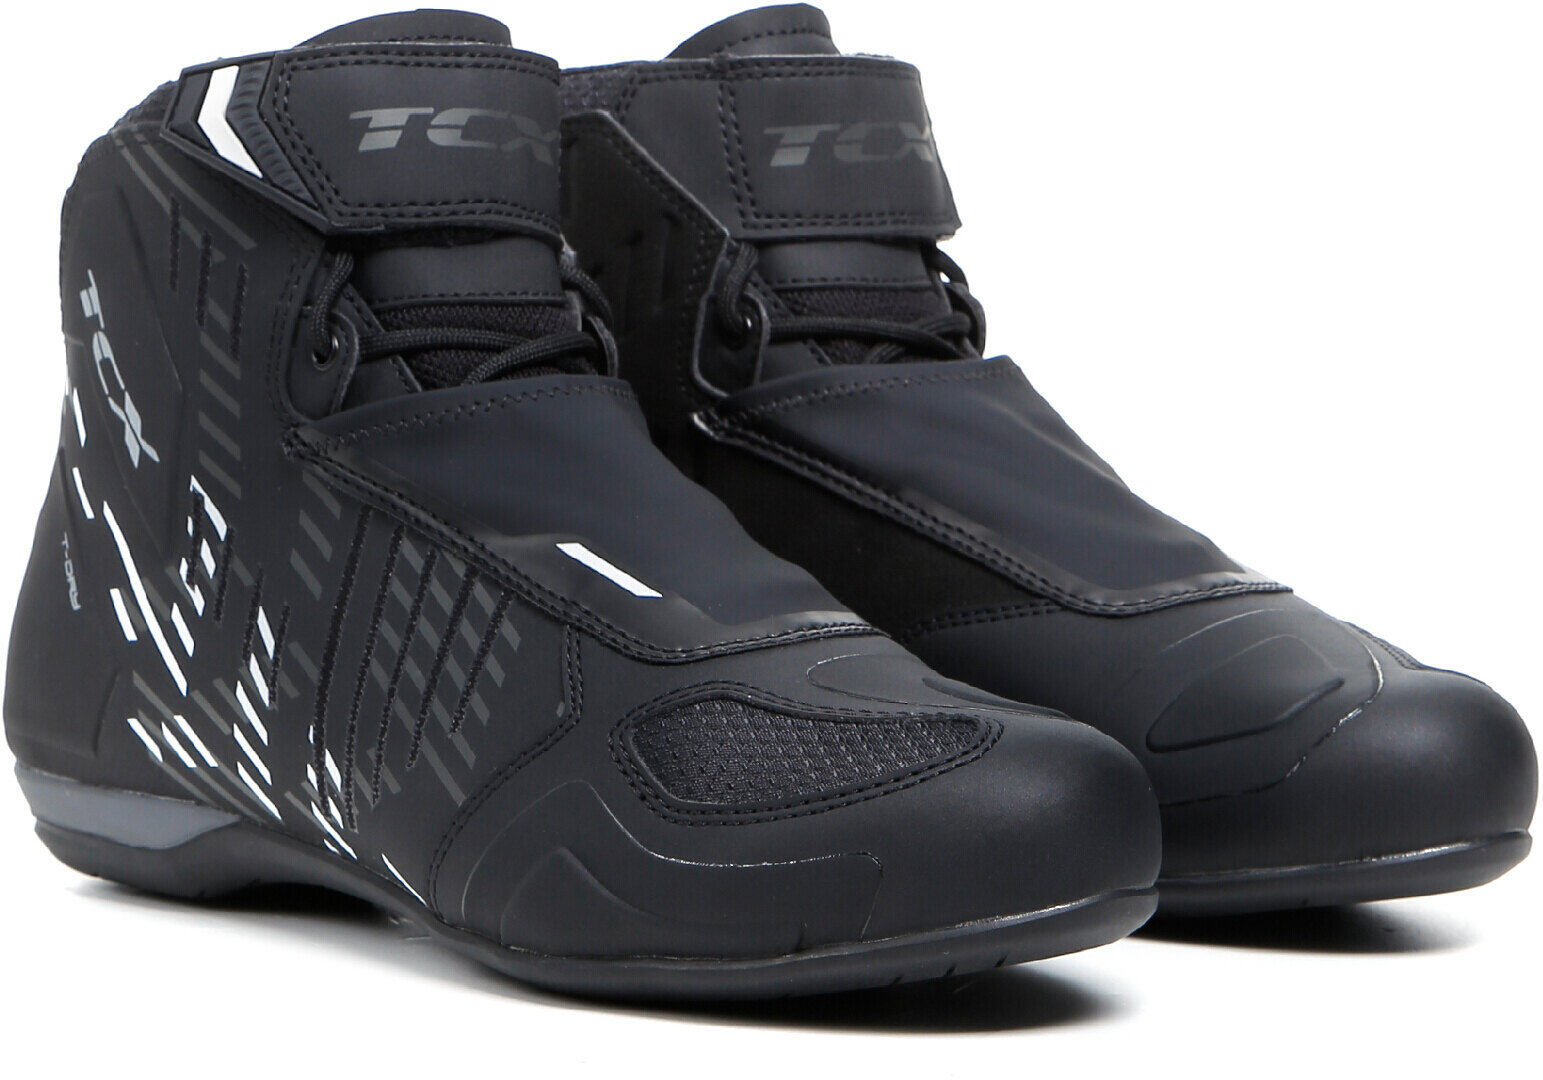 TCX RO4D WP Zapatos de motocicleta - Negro Blanco (39)